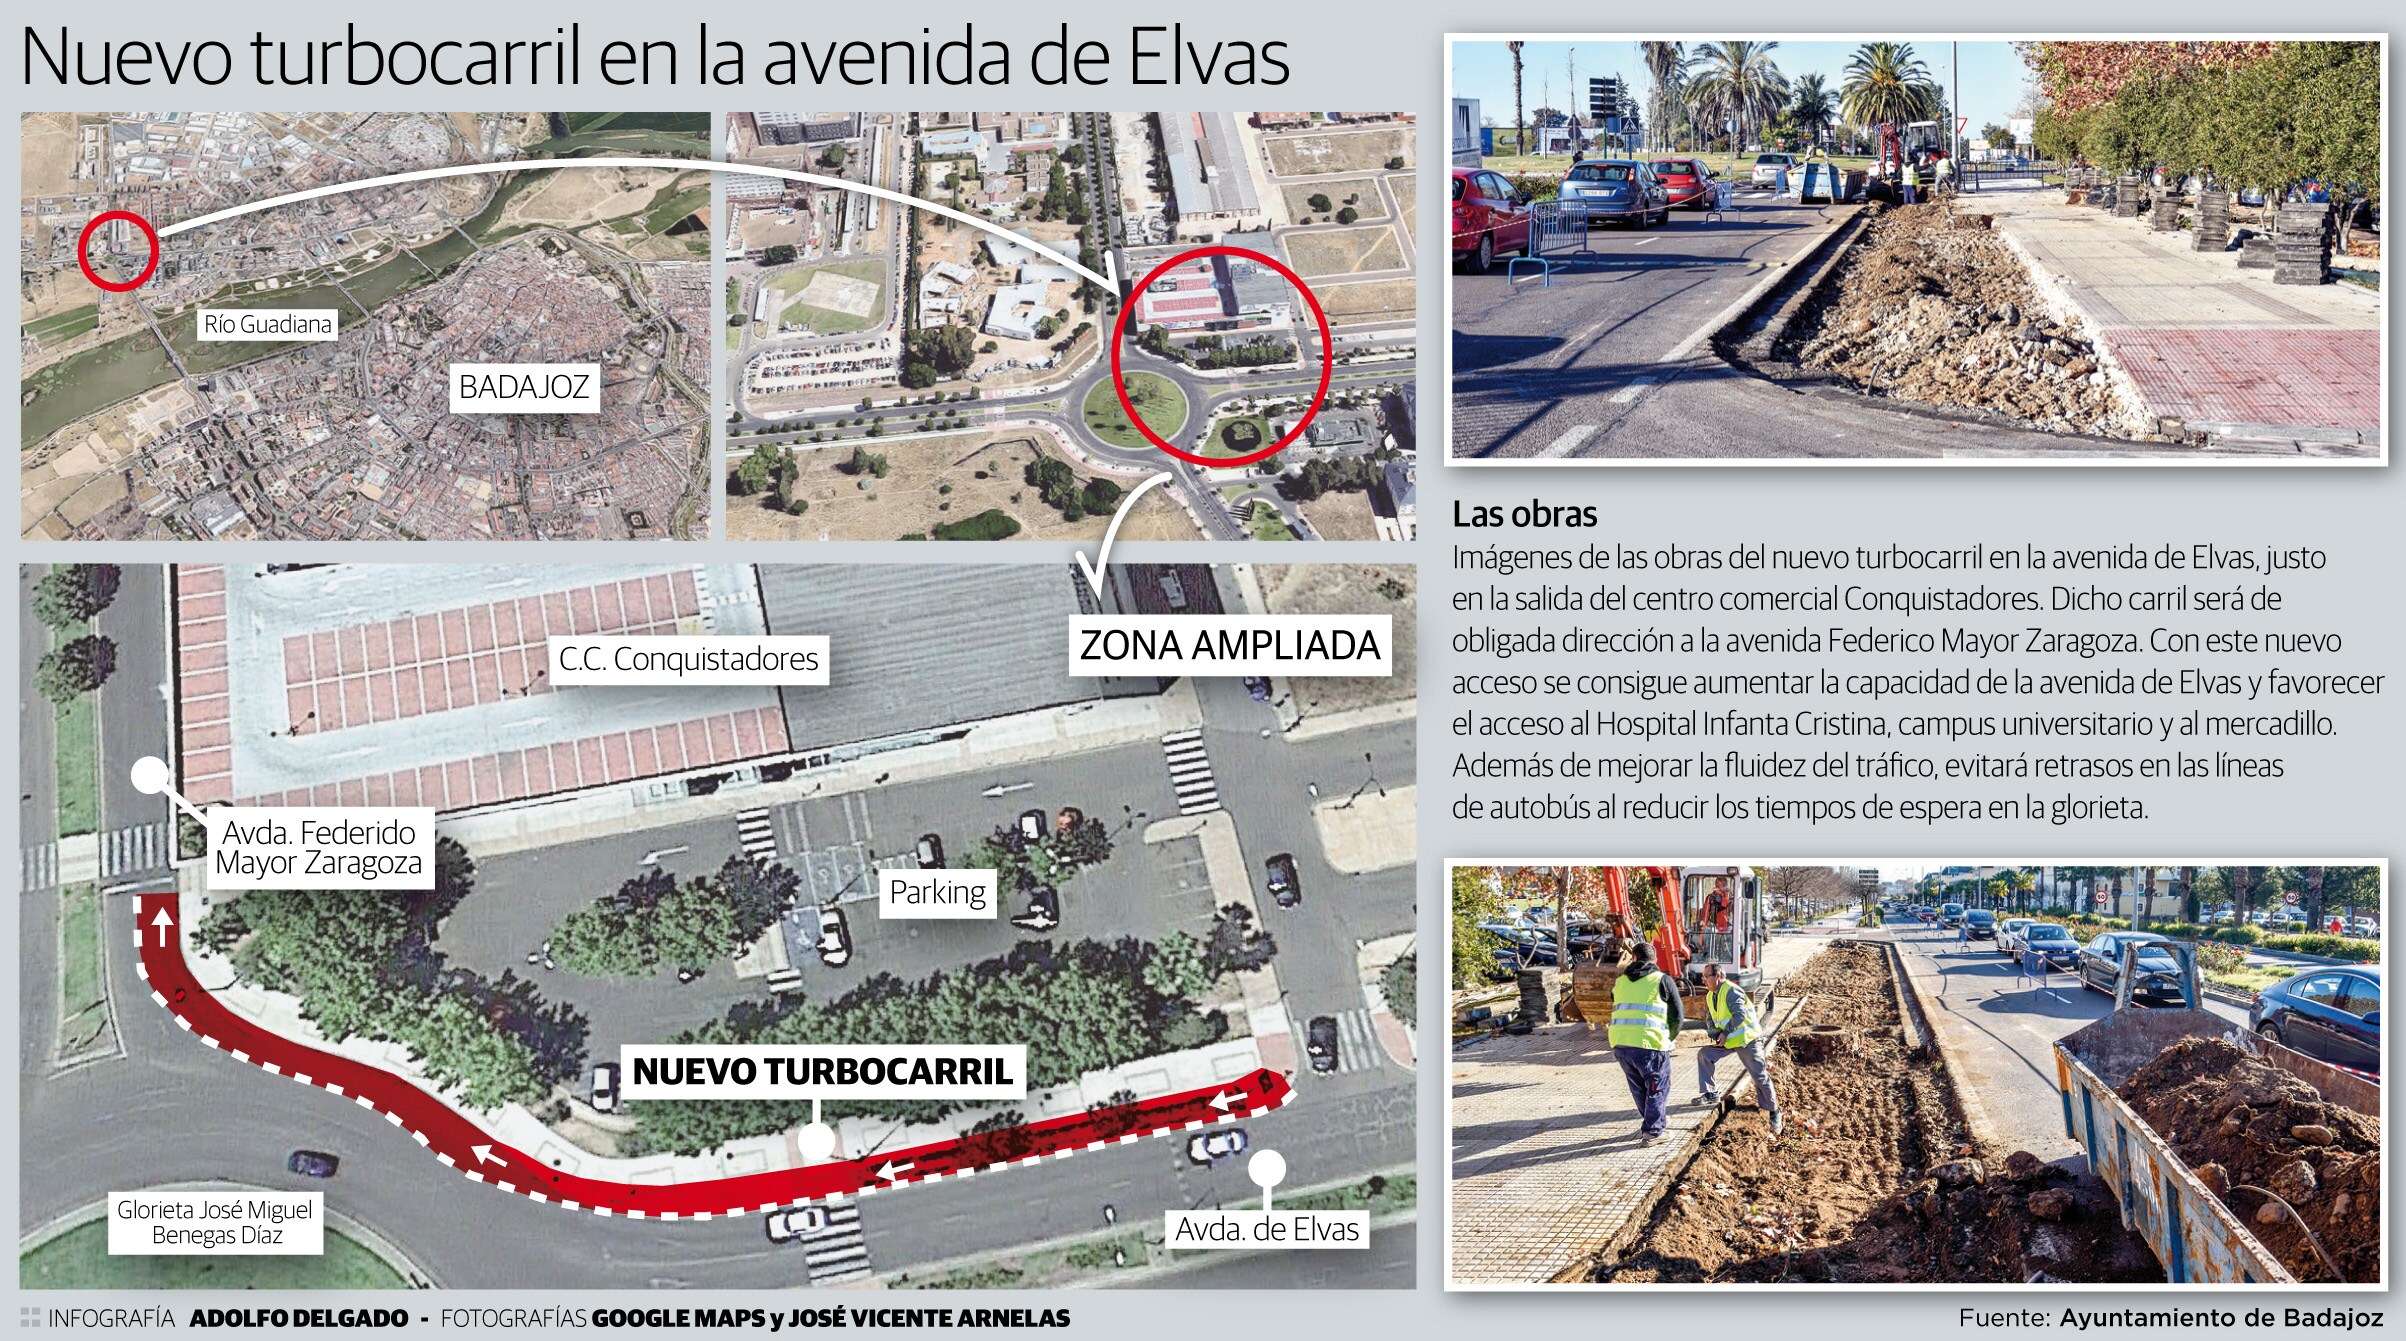 El nuevo vial permitirá que circulen por la avenida de Elvas entrar en la glorieta y girar a la derecha sin tener que ceder el paso